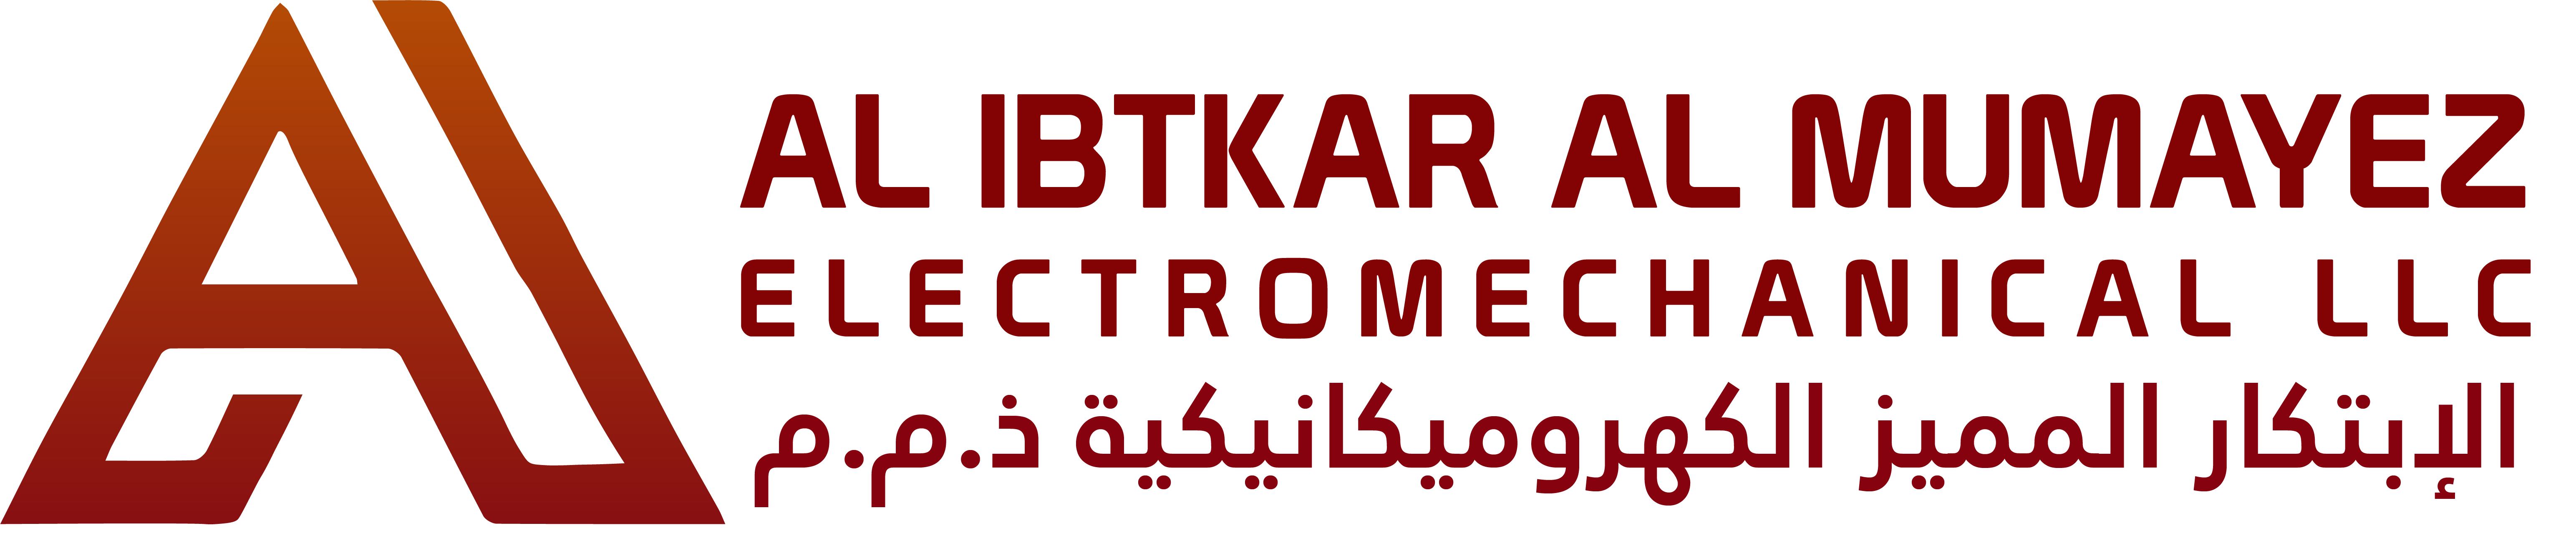 AL Ibtkar Al Mumayez Electromechanical | Dubai & Sharjah